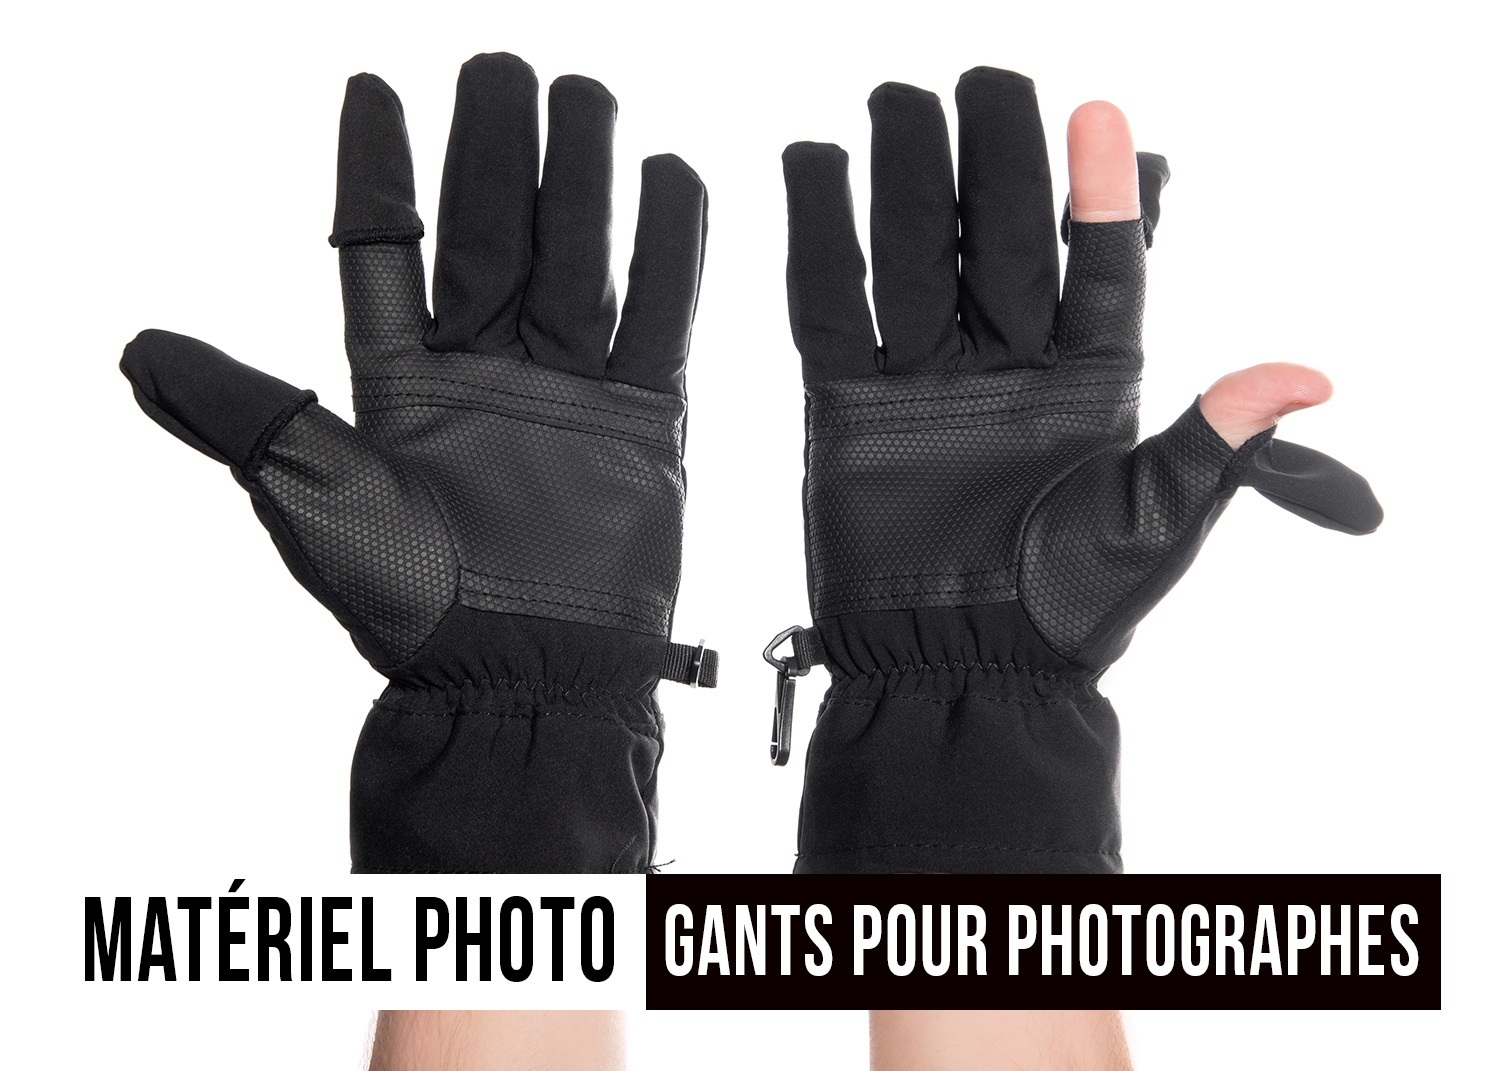 Gants de photographie : Les gants #1 pour les photographes